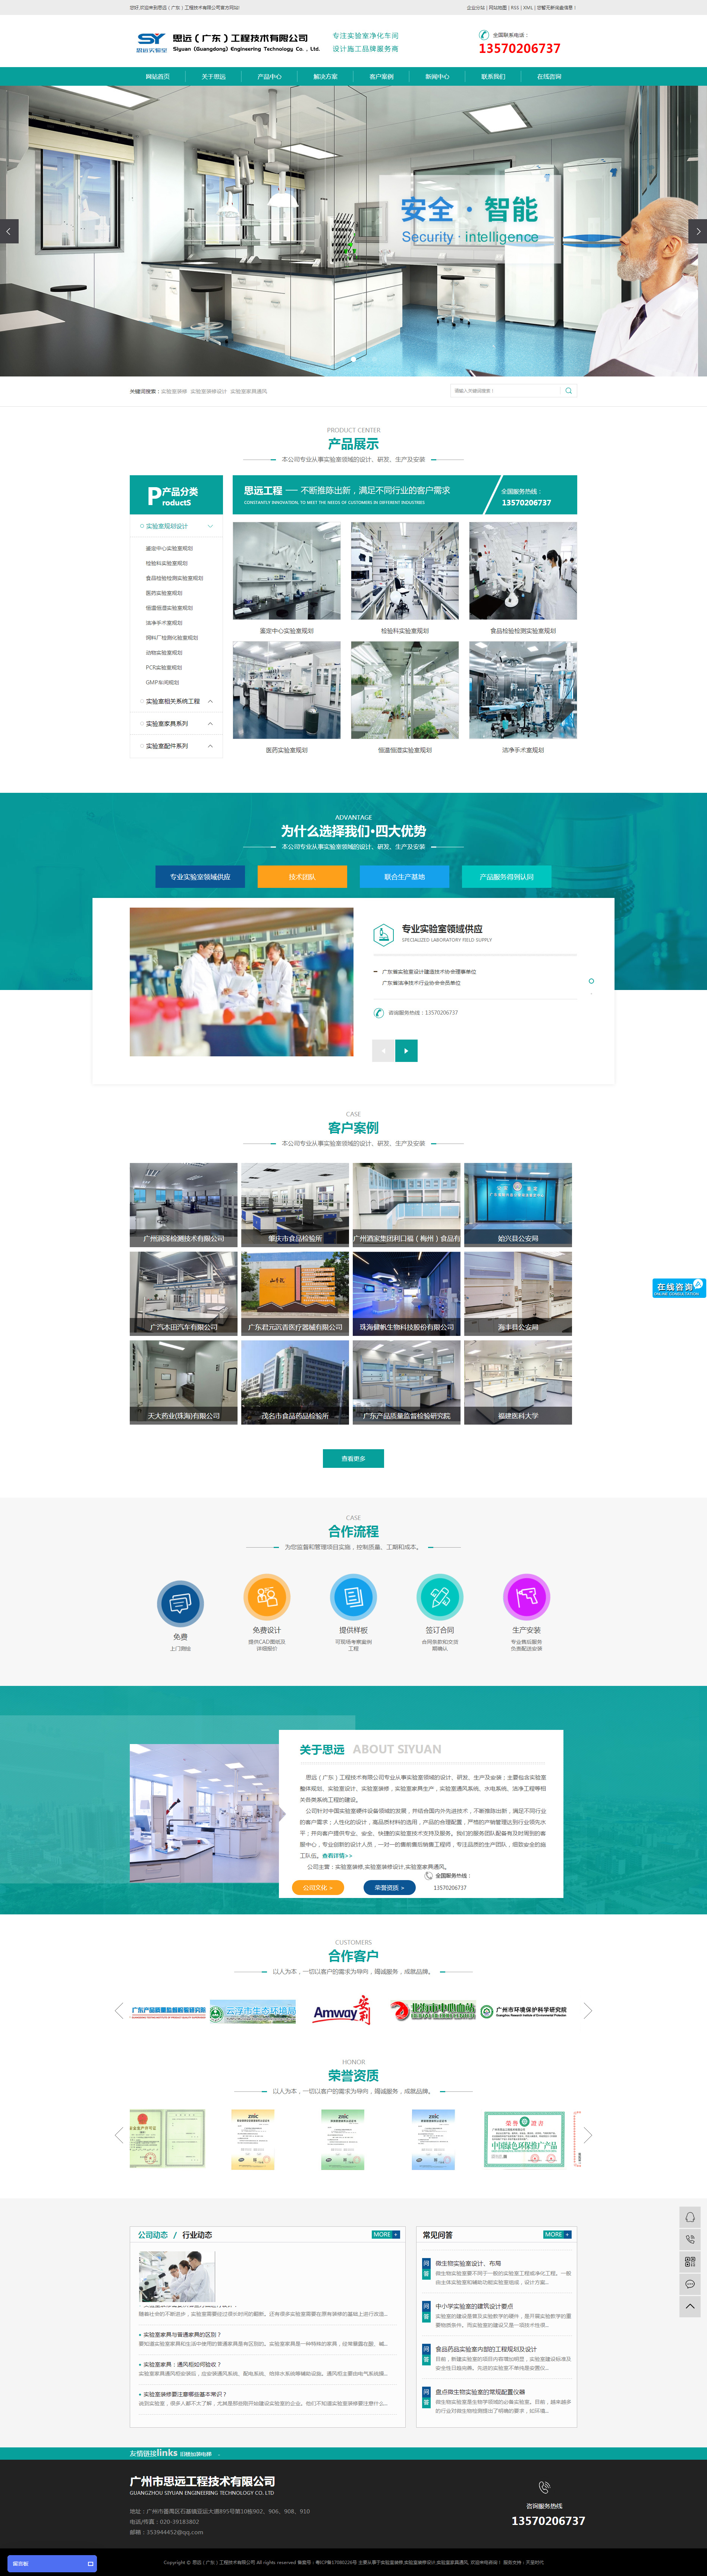 广东思远工程技术网站制作首页设计效果图